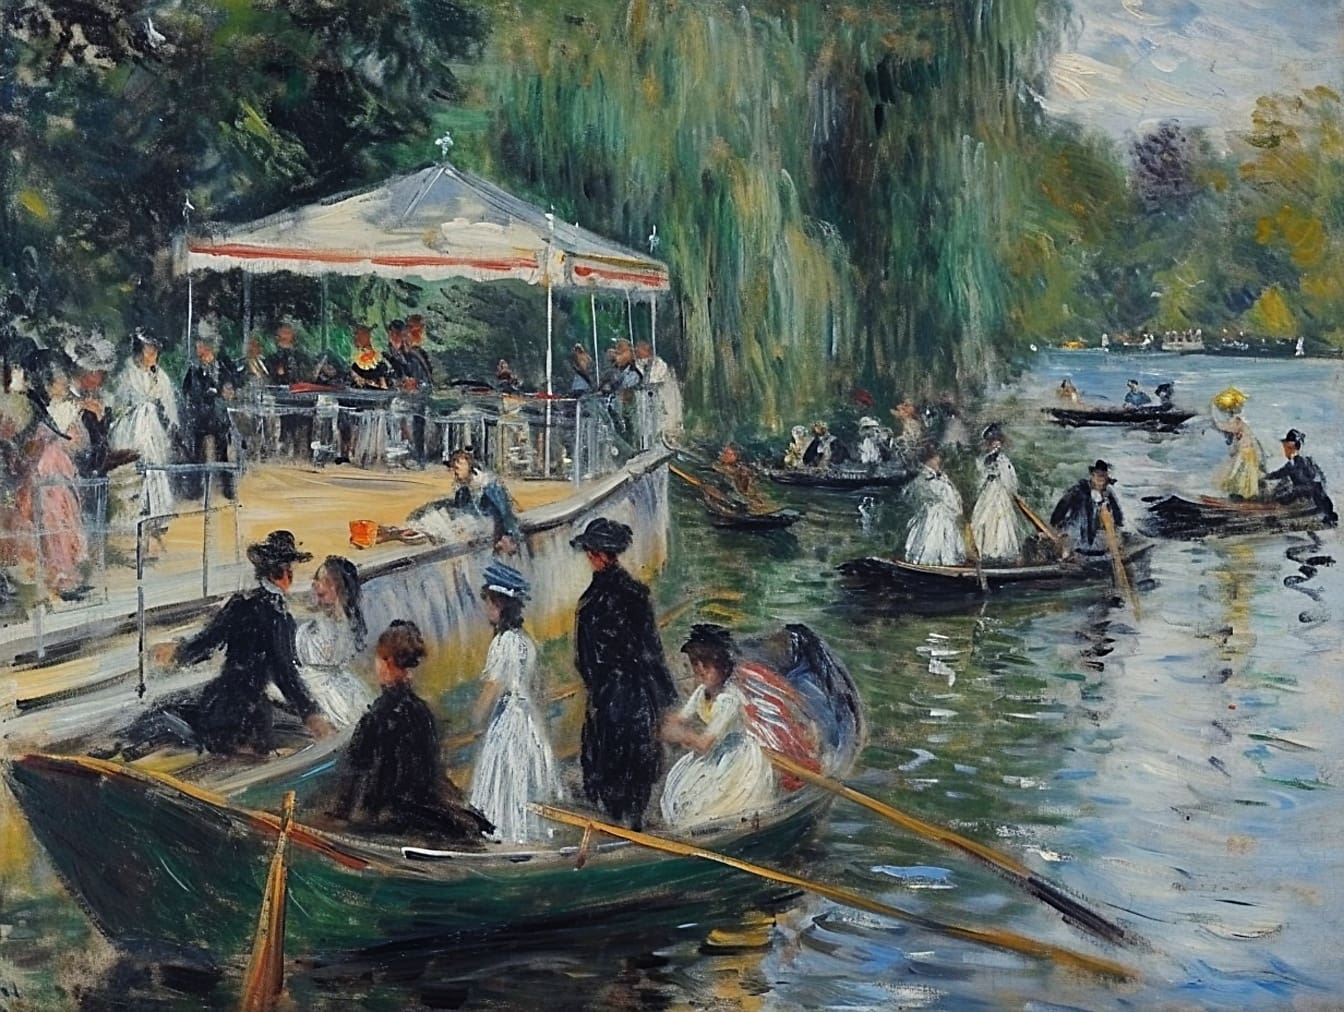 Dipinto ad olio di persone in barche su un fiume raffigurante 19 ° secolo stile di vita di persone benestanti